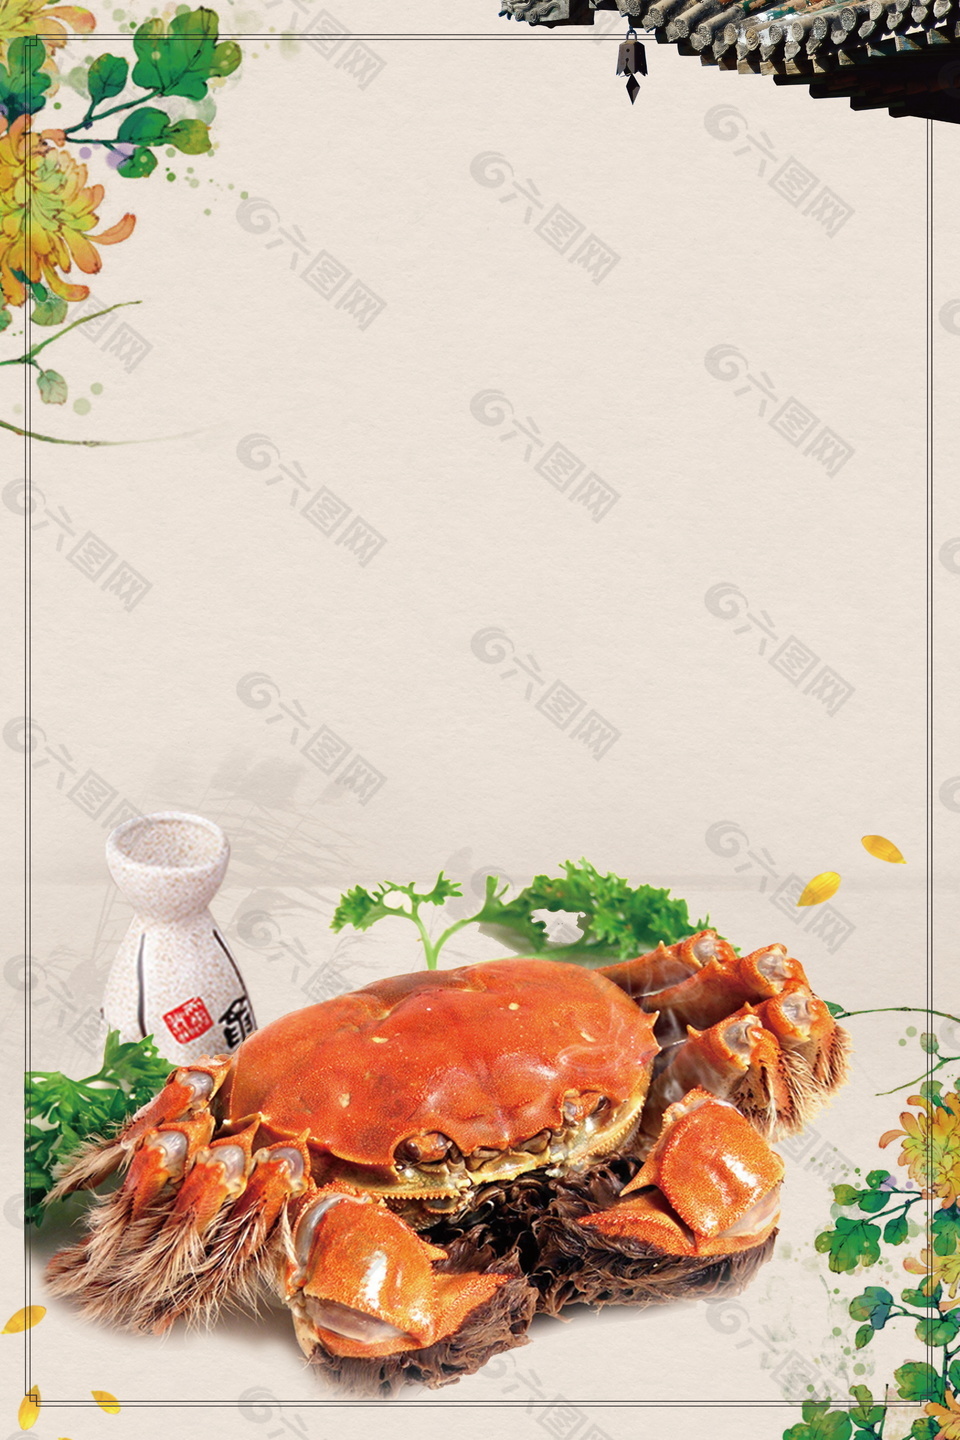 彩绘花朵大闸蟹海报背景素材